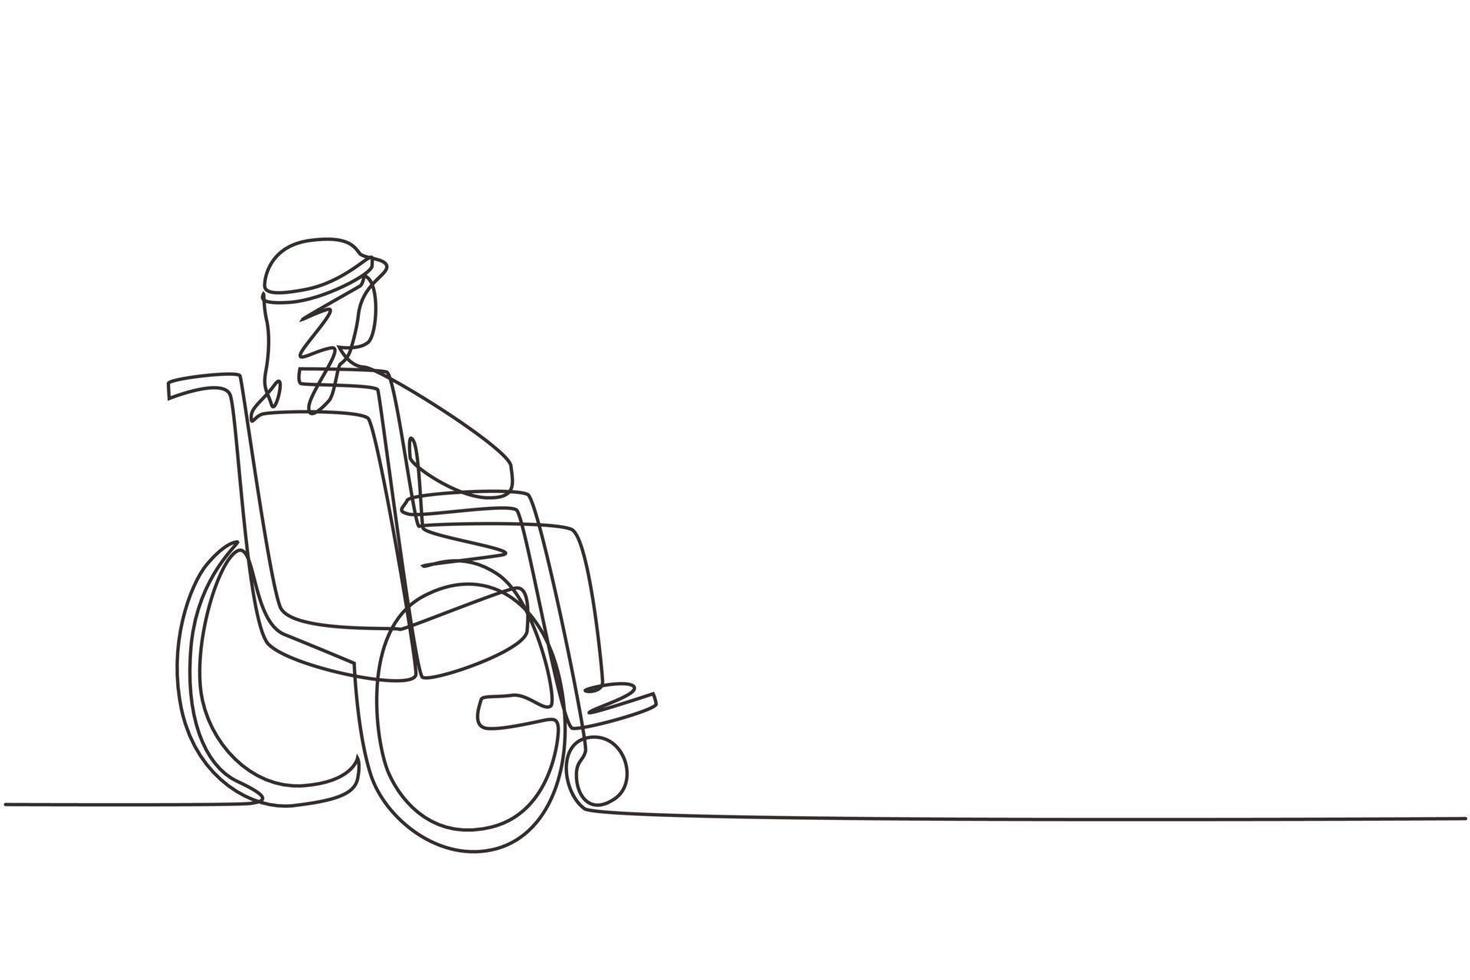 dibujo de una línea continua en la parte posterior de un anciano árabe solitario sentado en silla de ruedas, mirando las hojas secas de otoño distantes en el exterior. solitario, abandonado, desolado, solitario. vector de diseño de dibujo de una sola línea